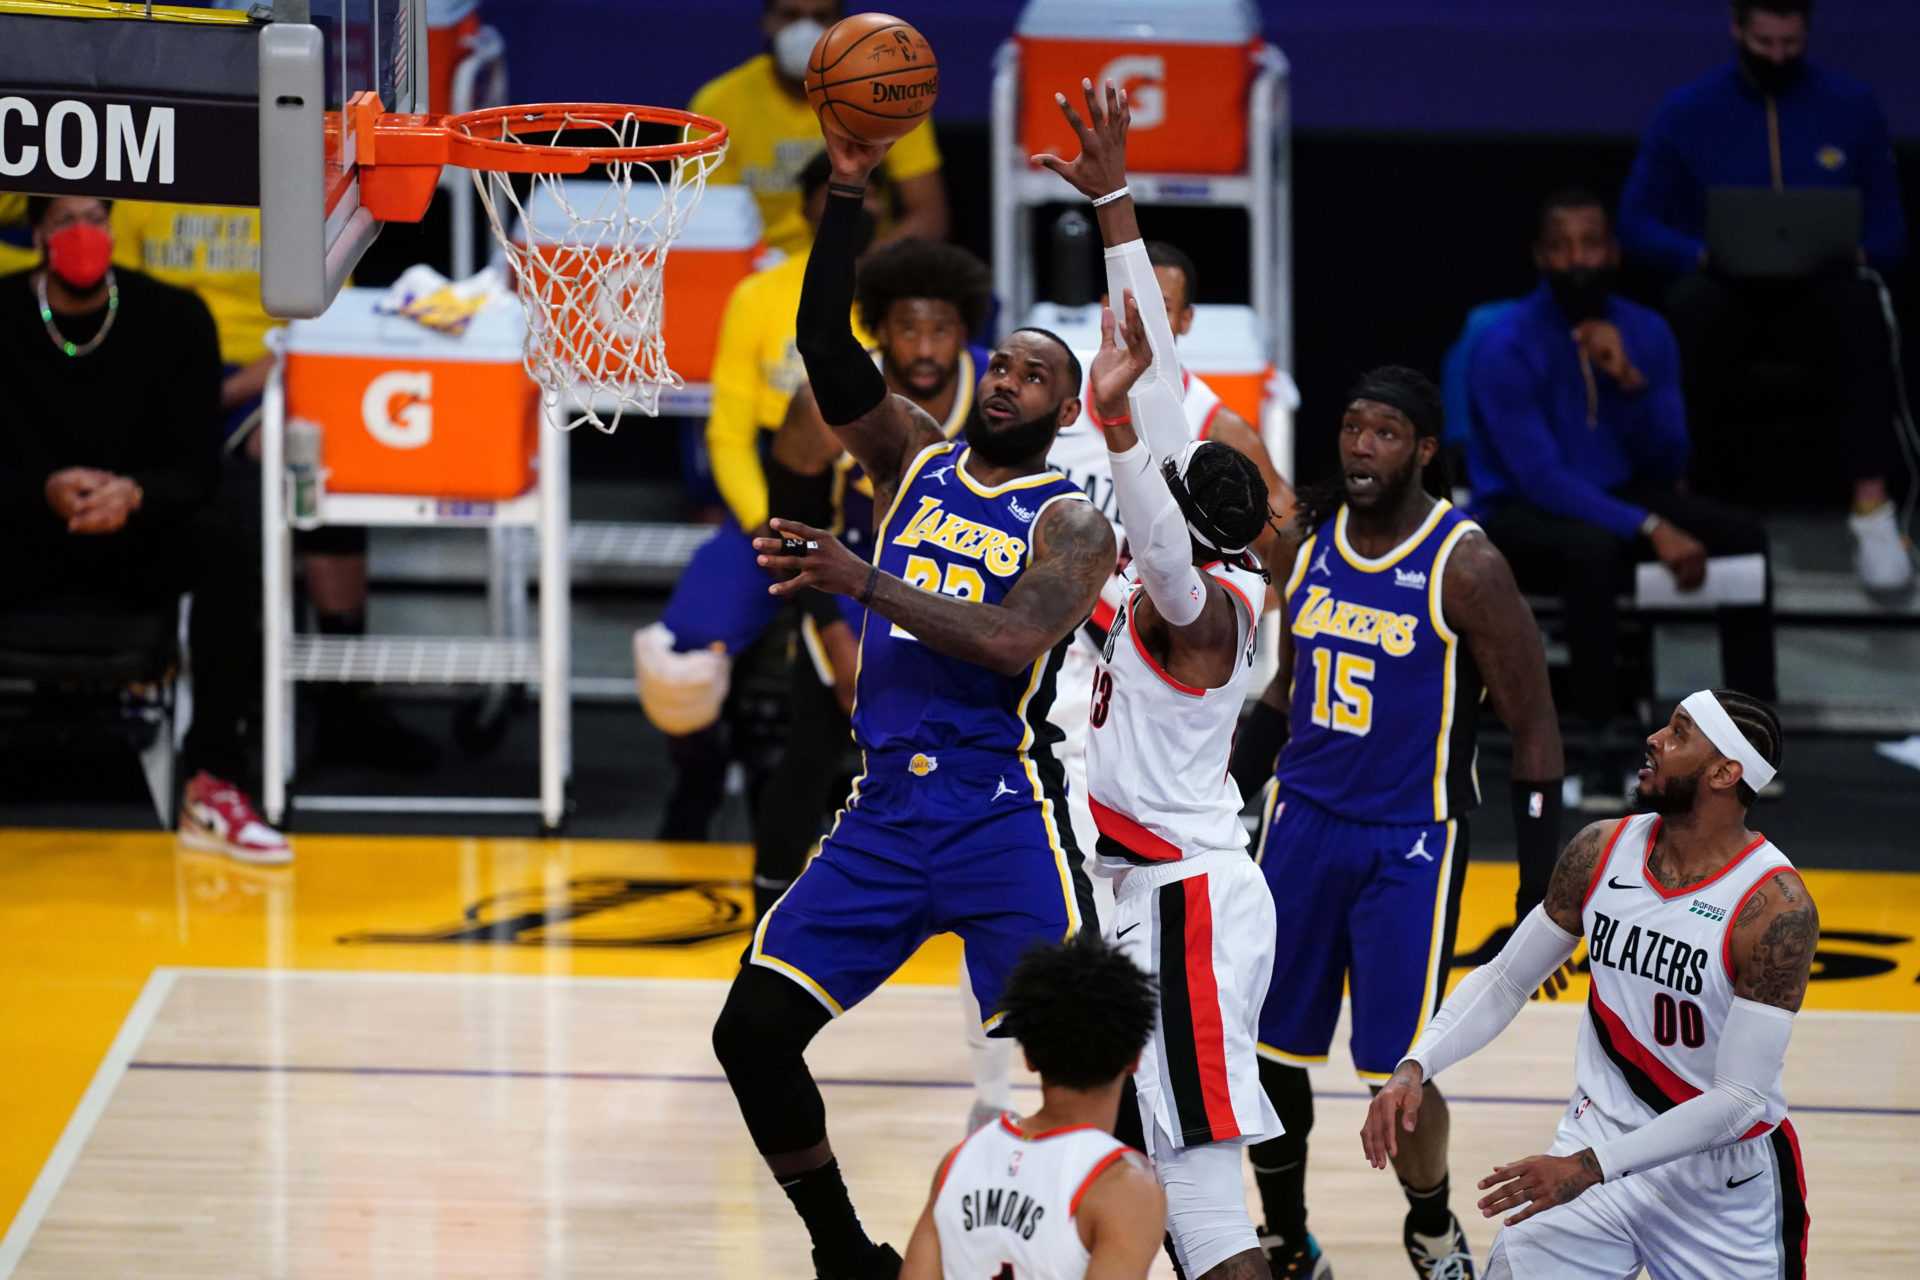 `` Dominez le jeu au plus haut niveau '' - Markieff Morris des Lakers explique pourquoi LeBron James est le leader du MVP